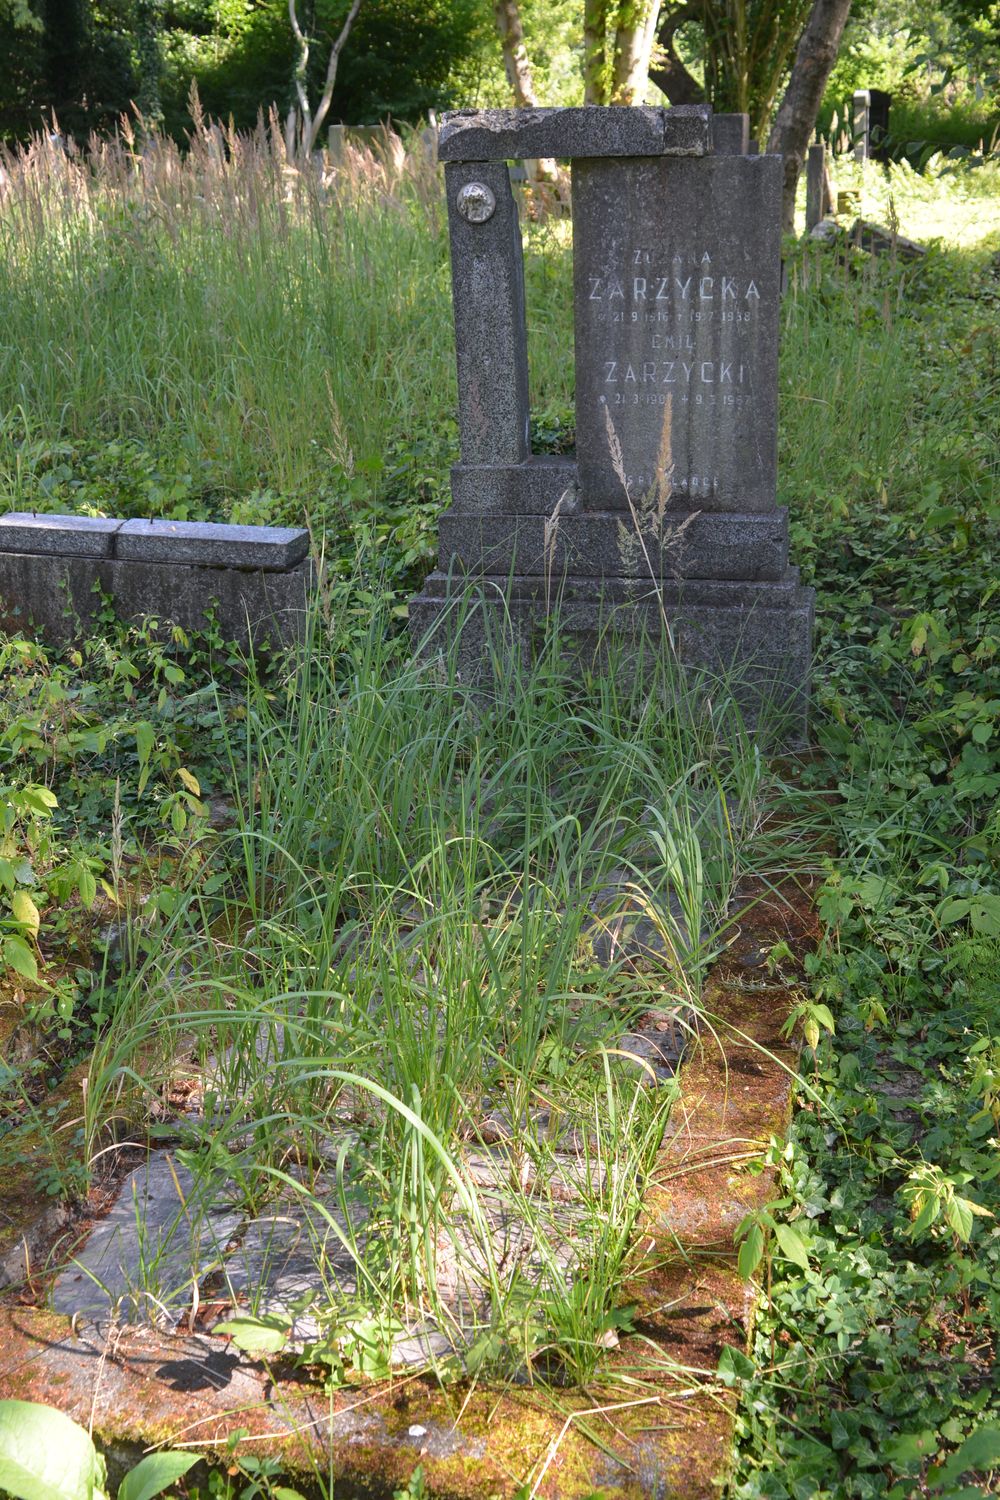 Tombstone of Emil and Zuzana Zarzycka, cemetery in Karviná Mexico, Czech Republic, as of 2022